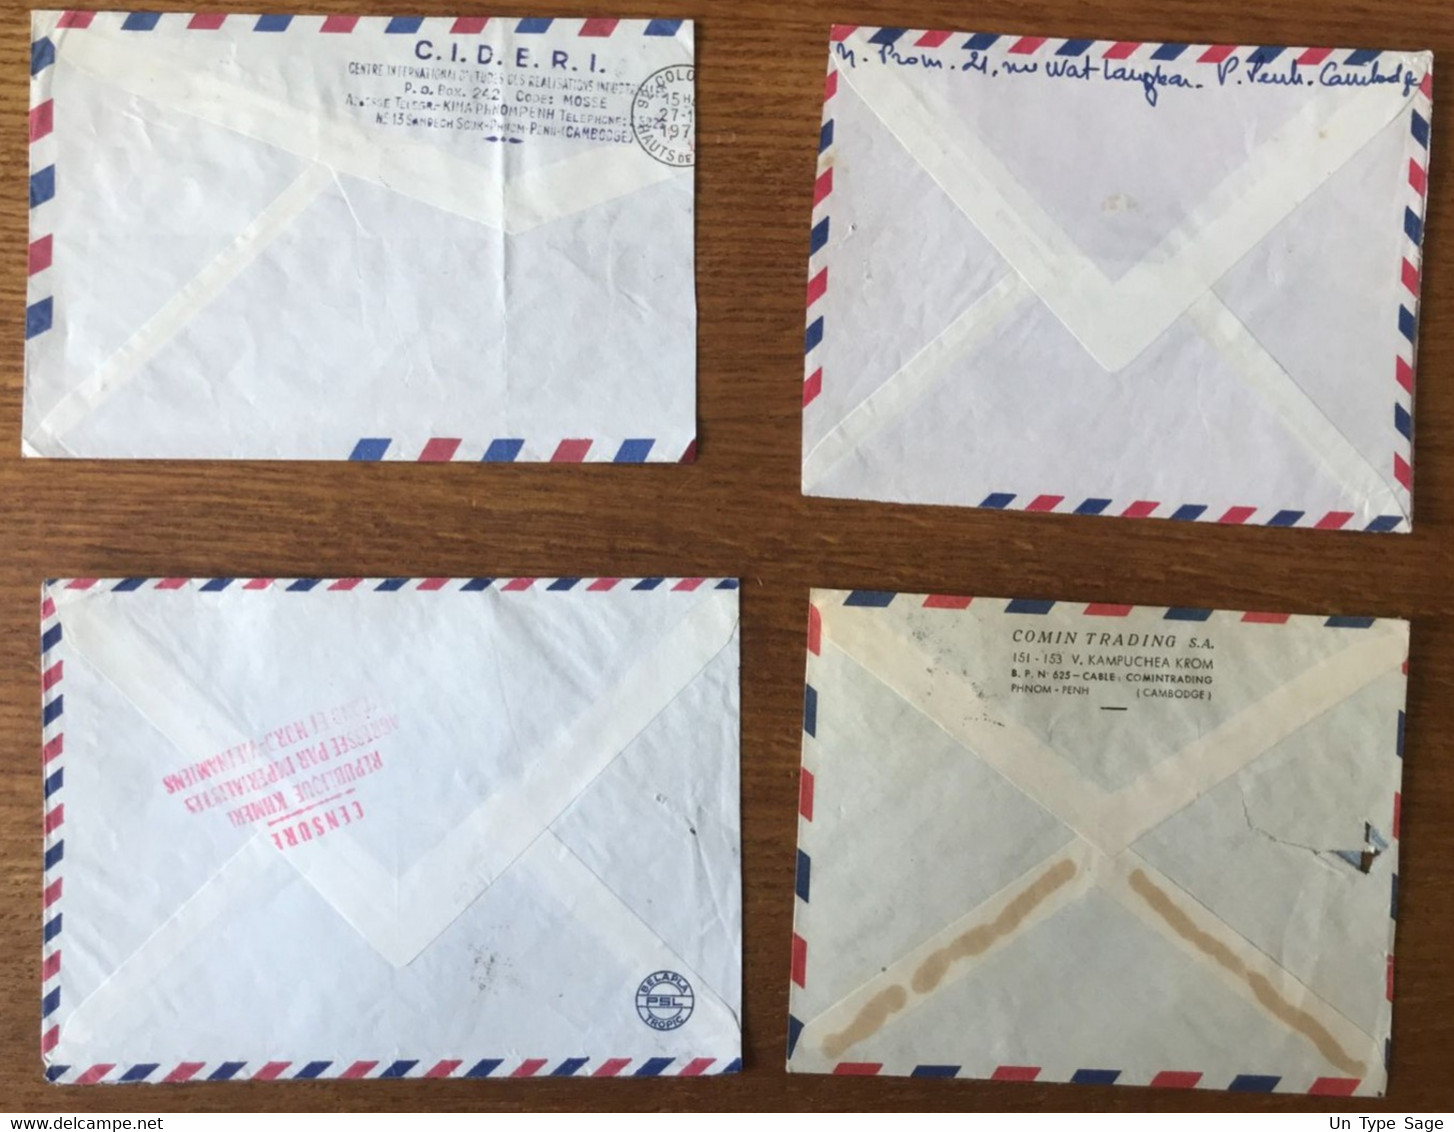 Cambodge - Lot De 12 Enveloppes Avec Censure Anti-vietcong - Année 70 à 74 - 6 Photos - (C1885) - Kambodscha